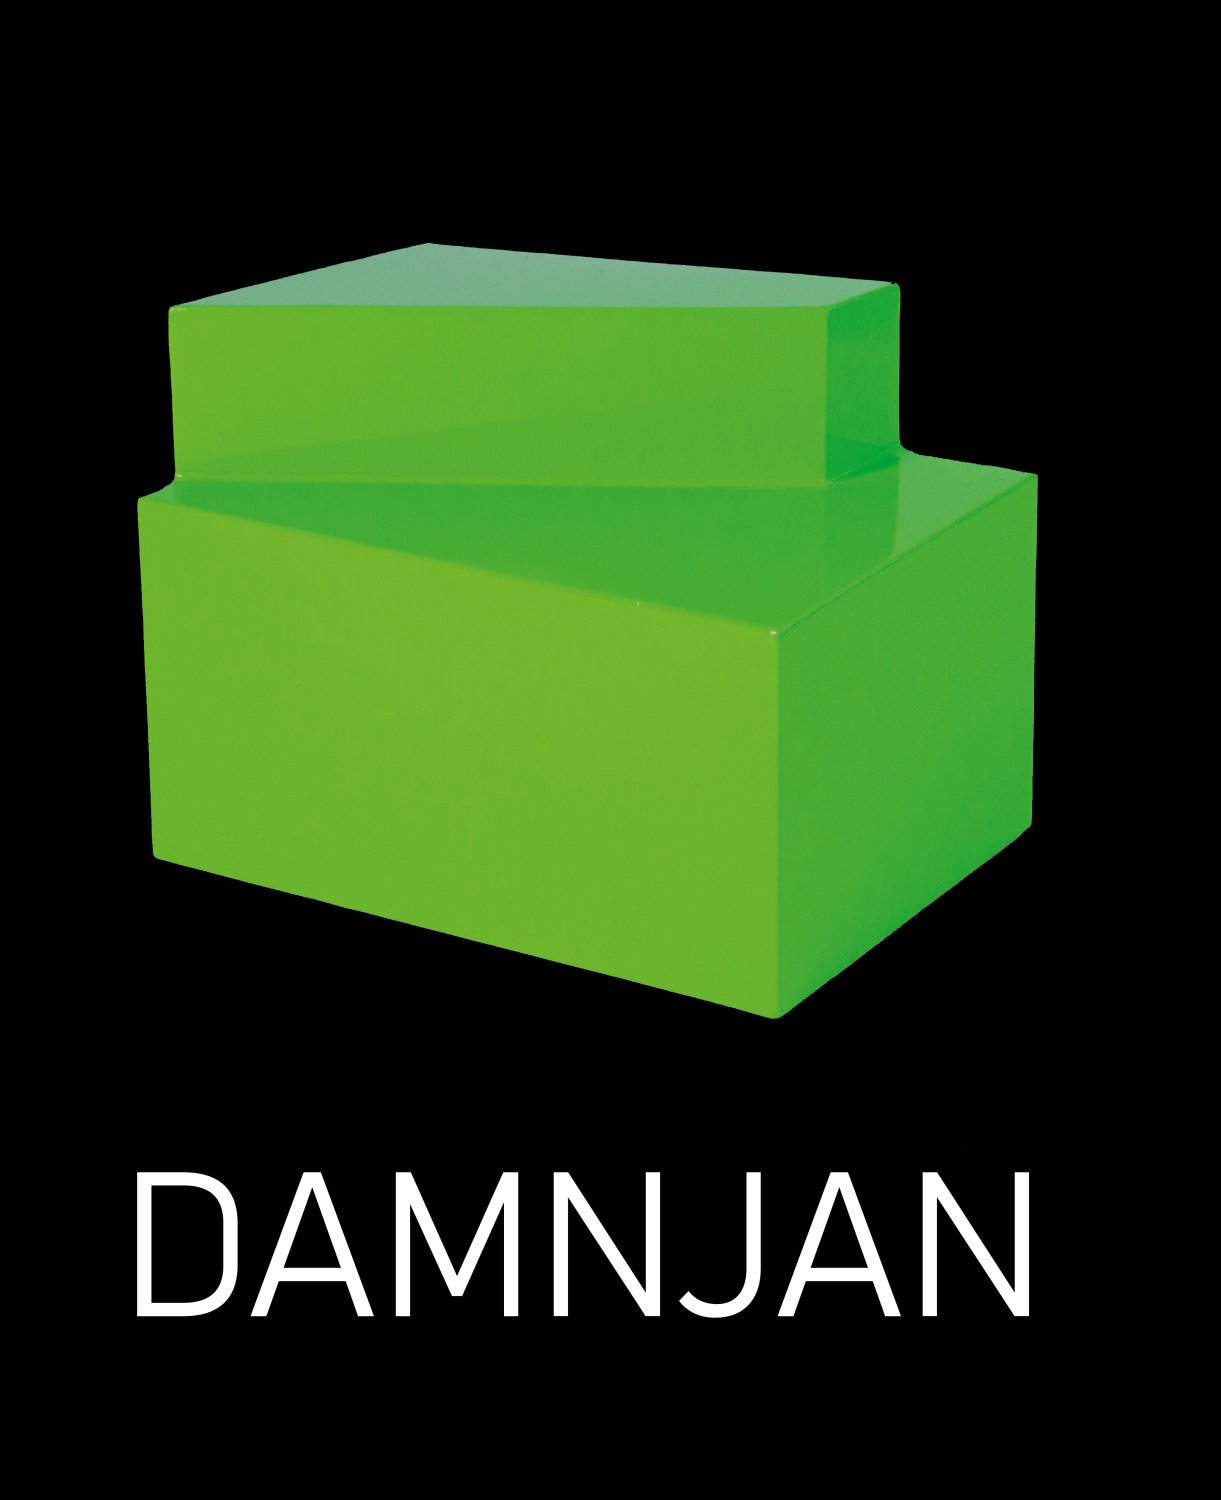 Damnjan